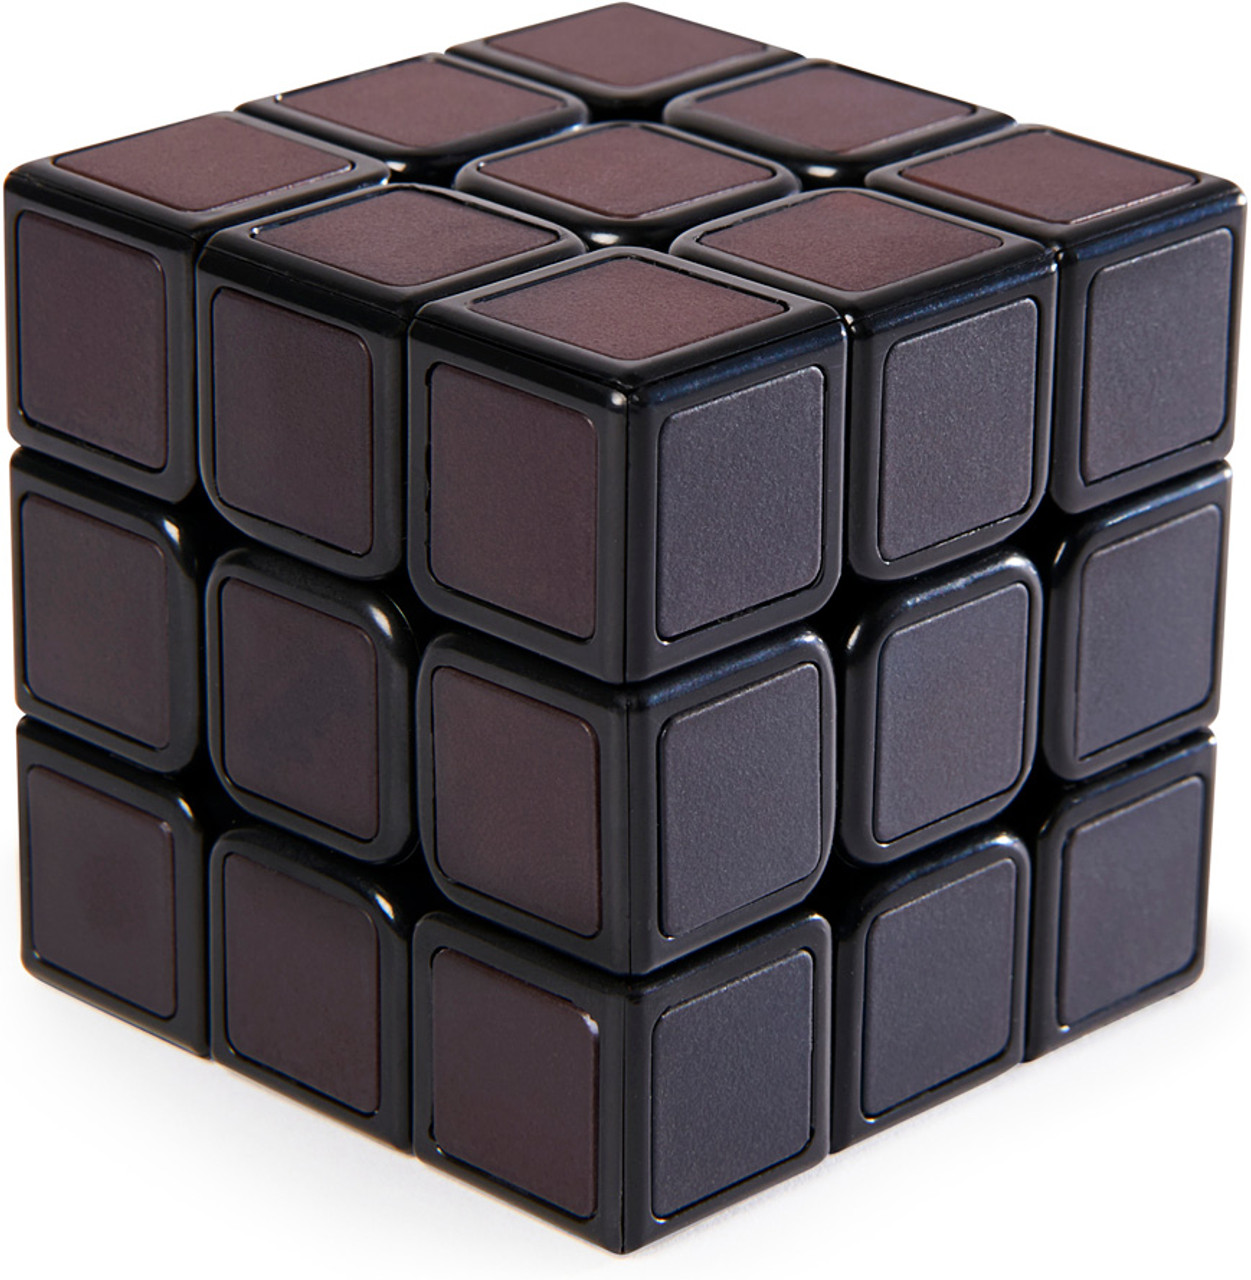 Rubik's Cube Phantom 2